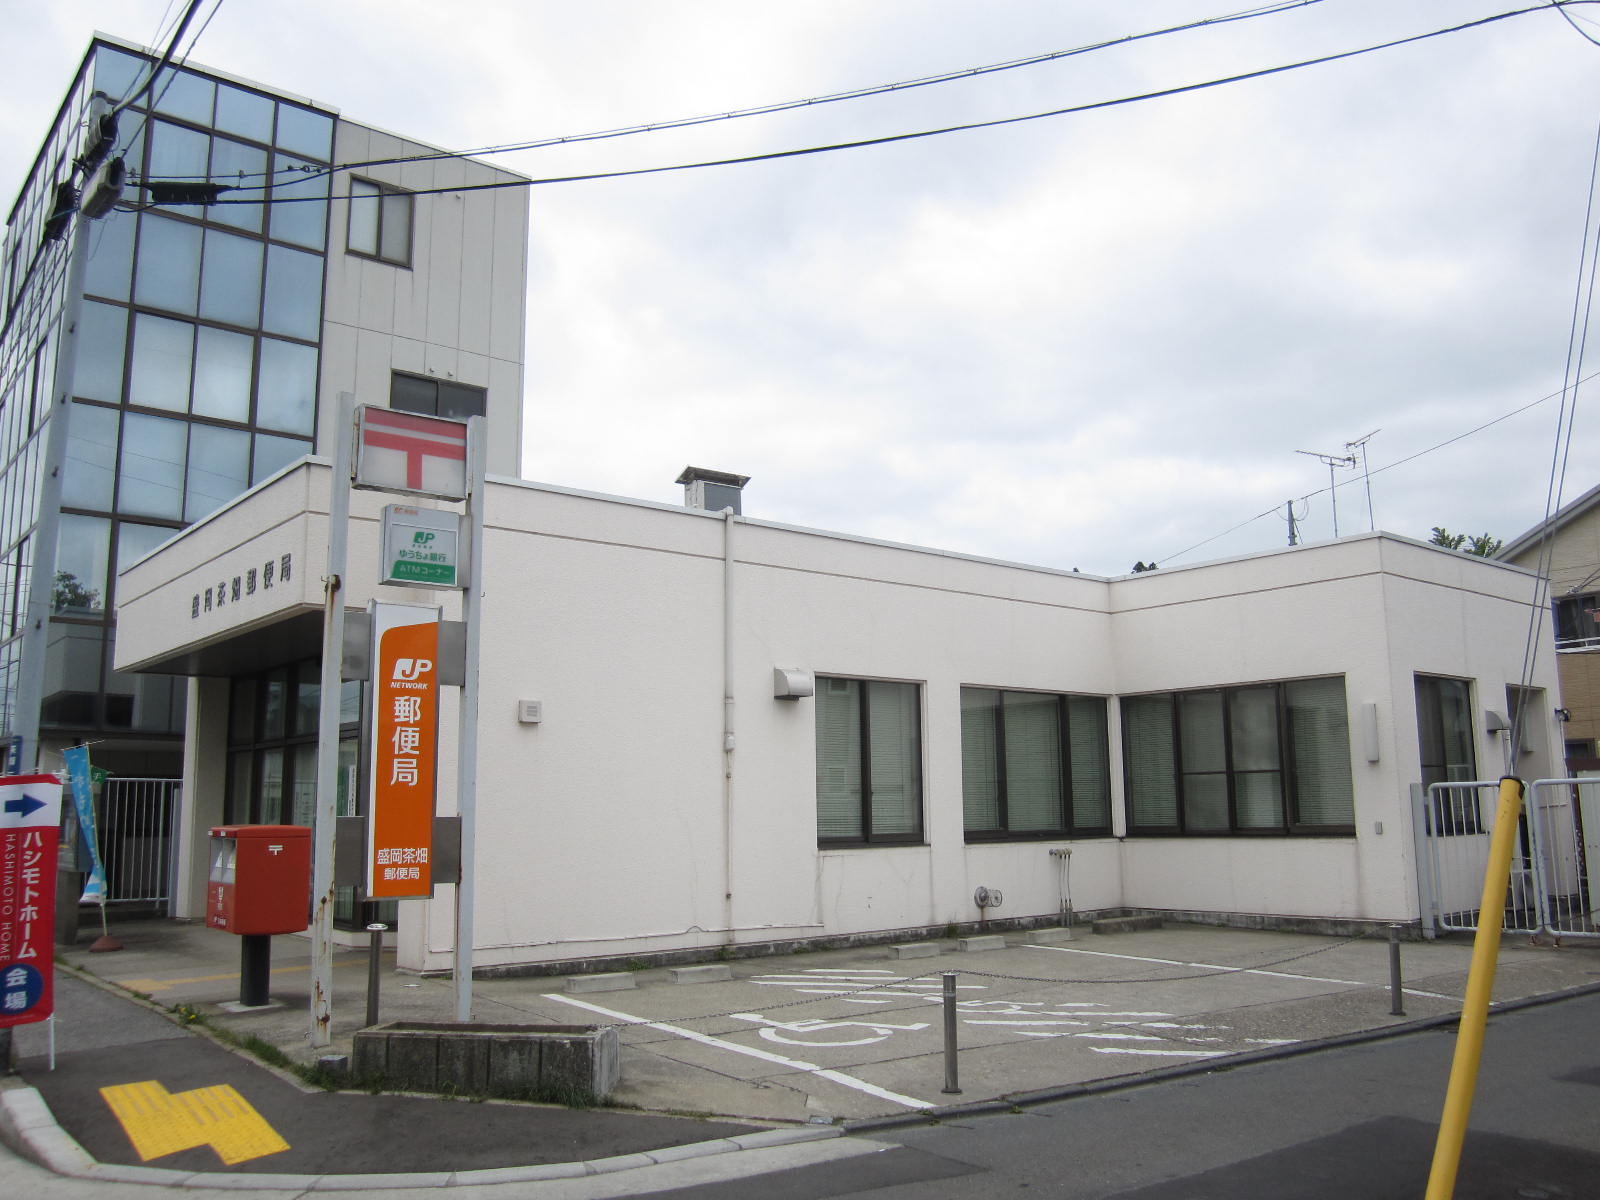 post office. 477m to Morioka tea garden post office (post office)